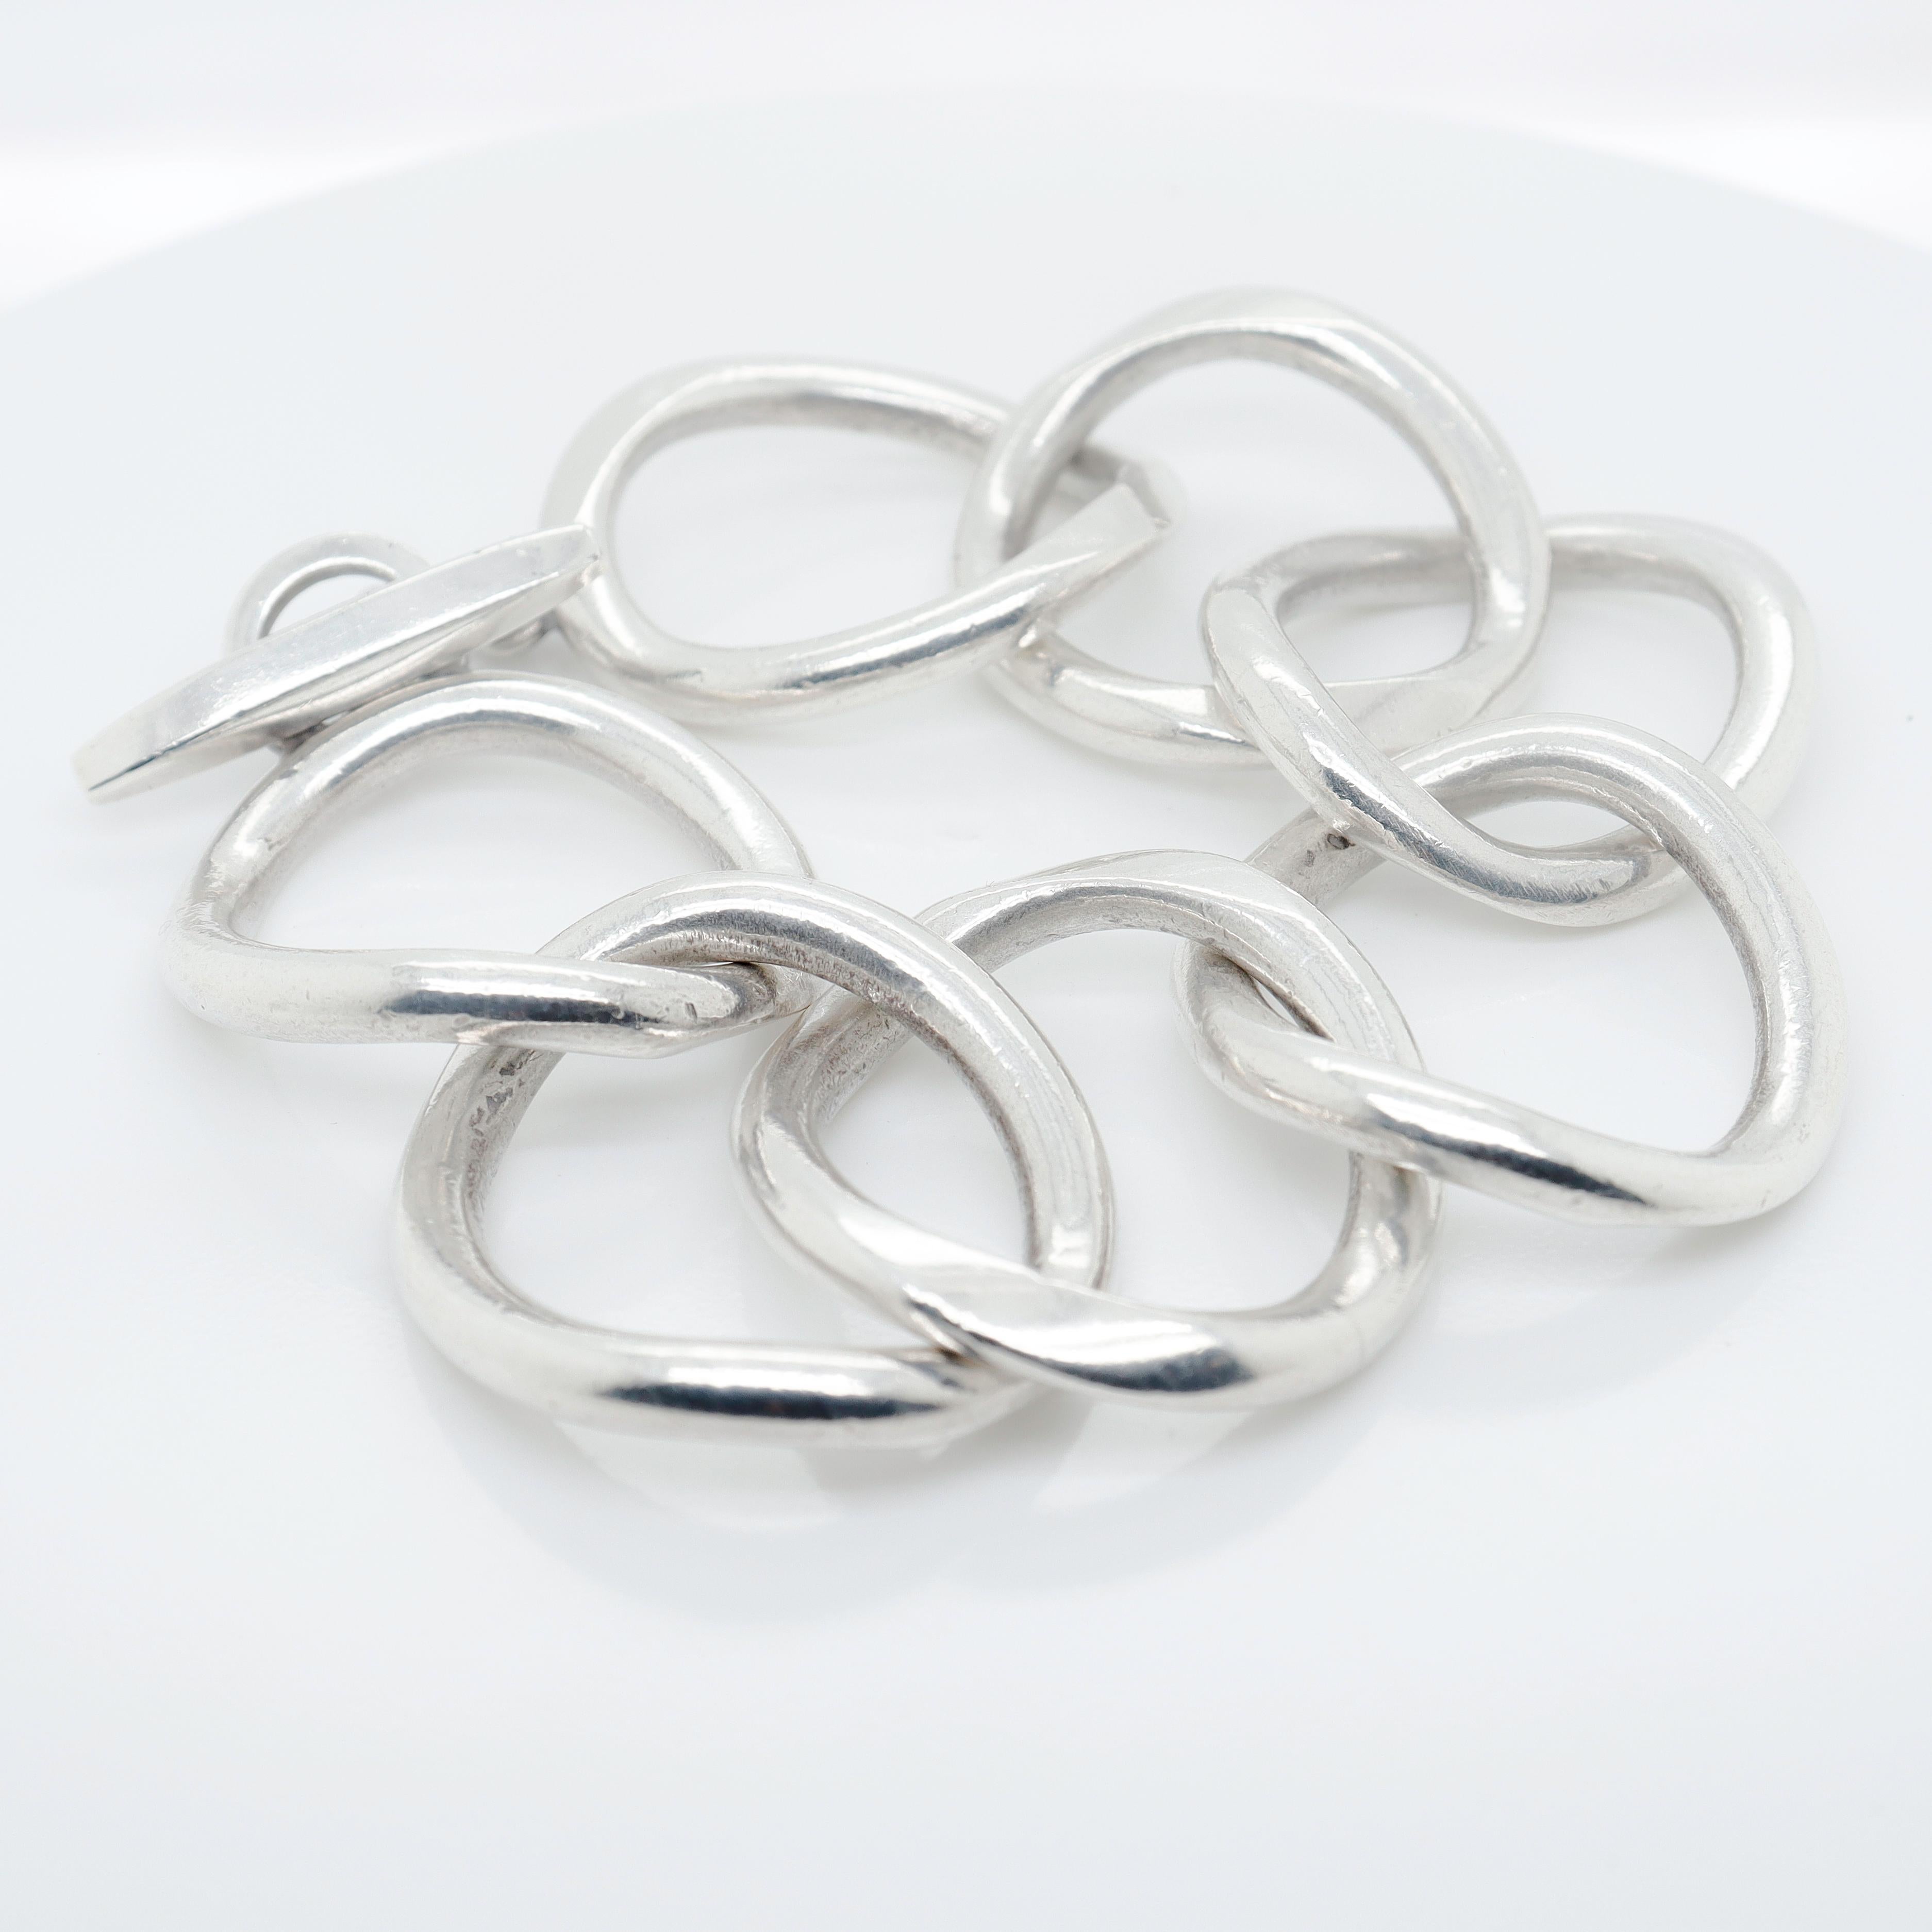 Signed Handmade Danish Modern Sterling Silver Large Link Bracelet by Randers For Sale 2